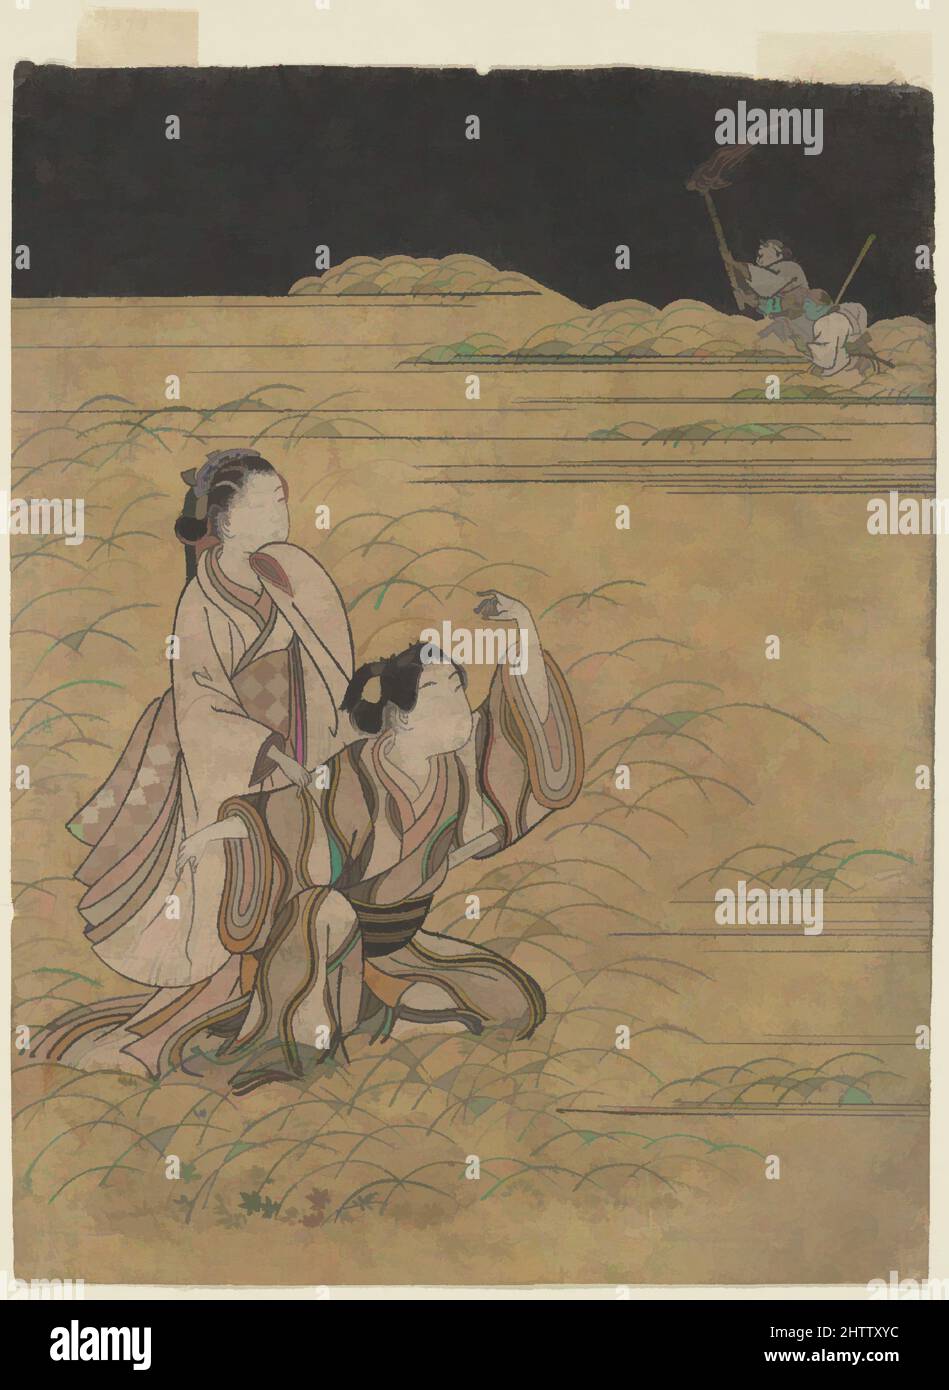 Arte inspirado por Elopers en Musashino, Edo Period (1615–1868), Japón, estampado de bloques de madera policromada; tinta y color sobre papel, imagen: 10 x 7 5/8 pulg. (25,4 x 19,4 cm), Impresiones, Suikōdō sakei (japonés, ca. 1764), en este episodio de los Cuentos de Ise, el infatigable joven héroe de la, obras clásicas modernizadas por Artótop con un toque de modernidad. Formas, color y valor, atractivo impacto visual en el arte Emociones a través de la libertad de las obras de arte de una manera contemporánea. Un mensaje atemporal que busca una nueva dirección totalmente creativa. Artistas que se están volviendo al medio digital y creando el Artotop NFT Foto de stock